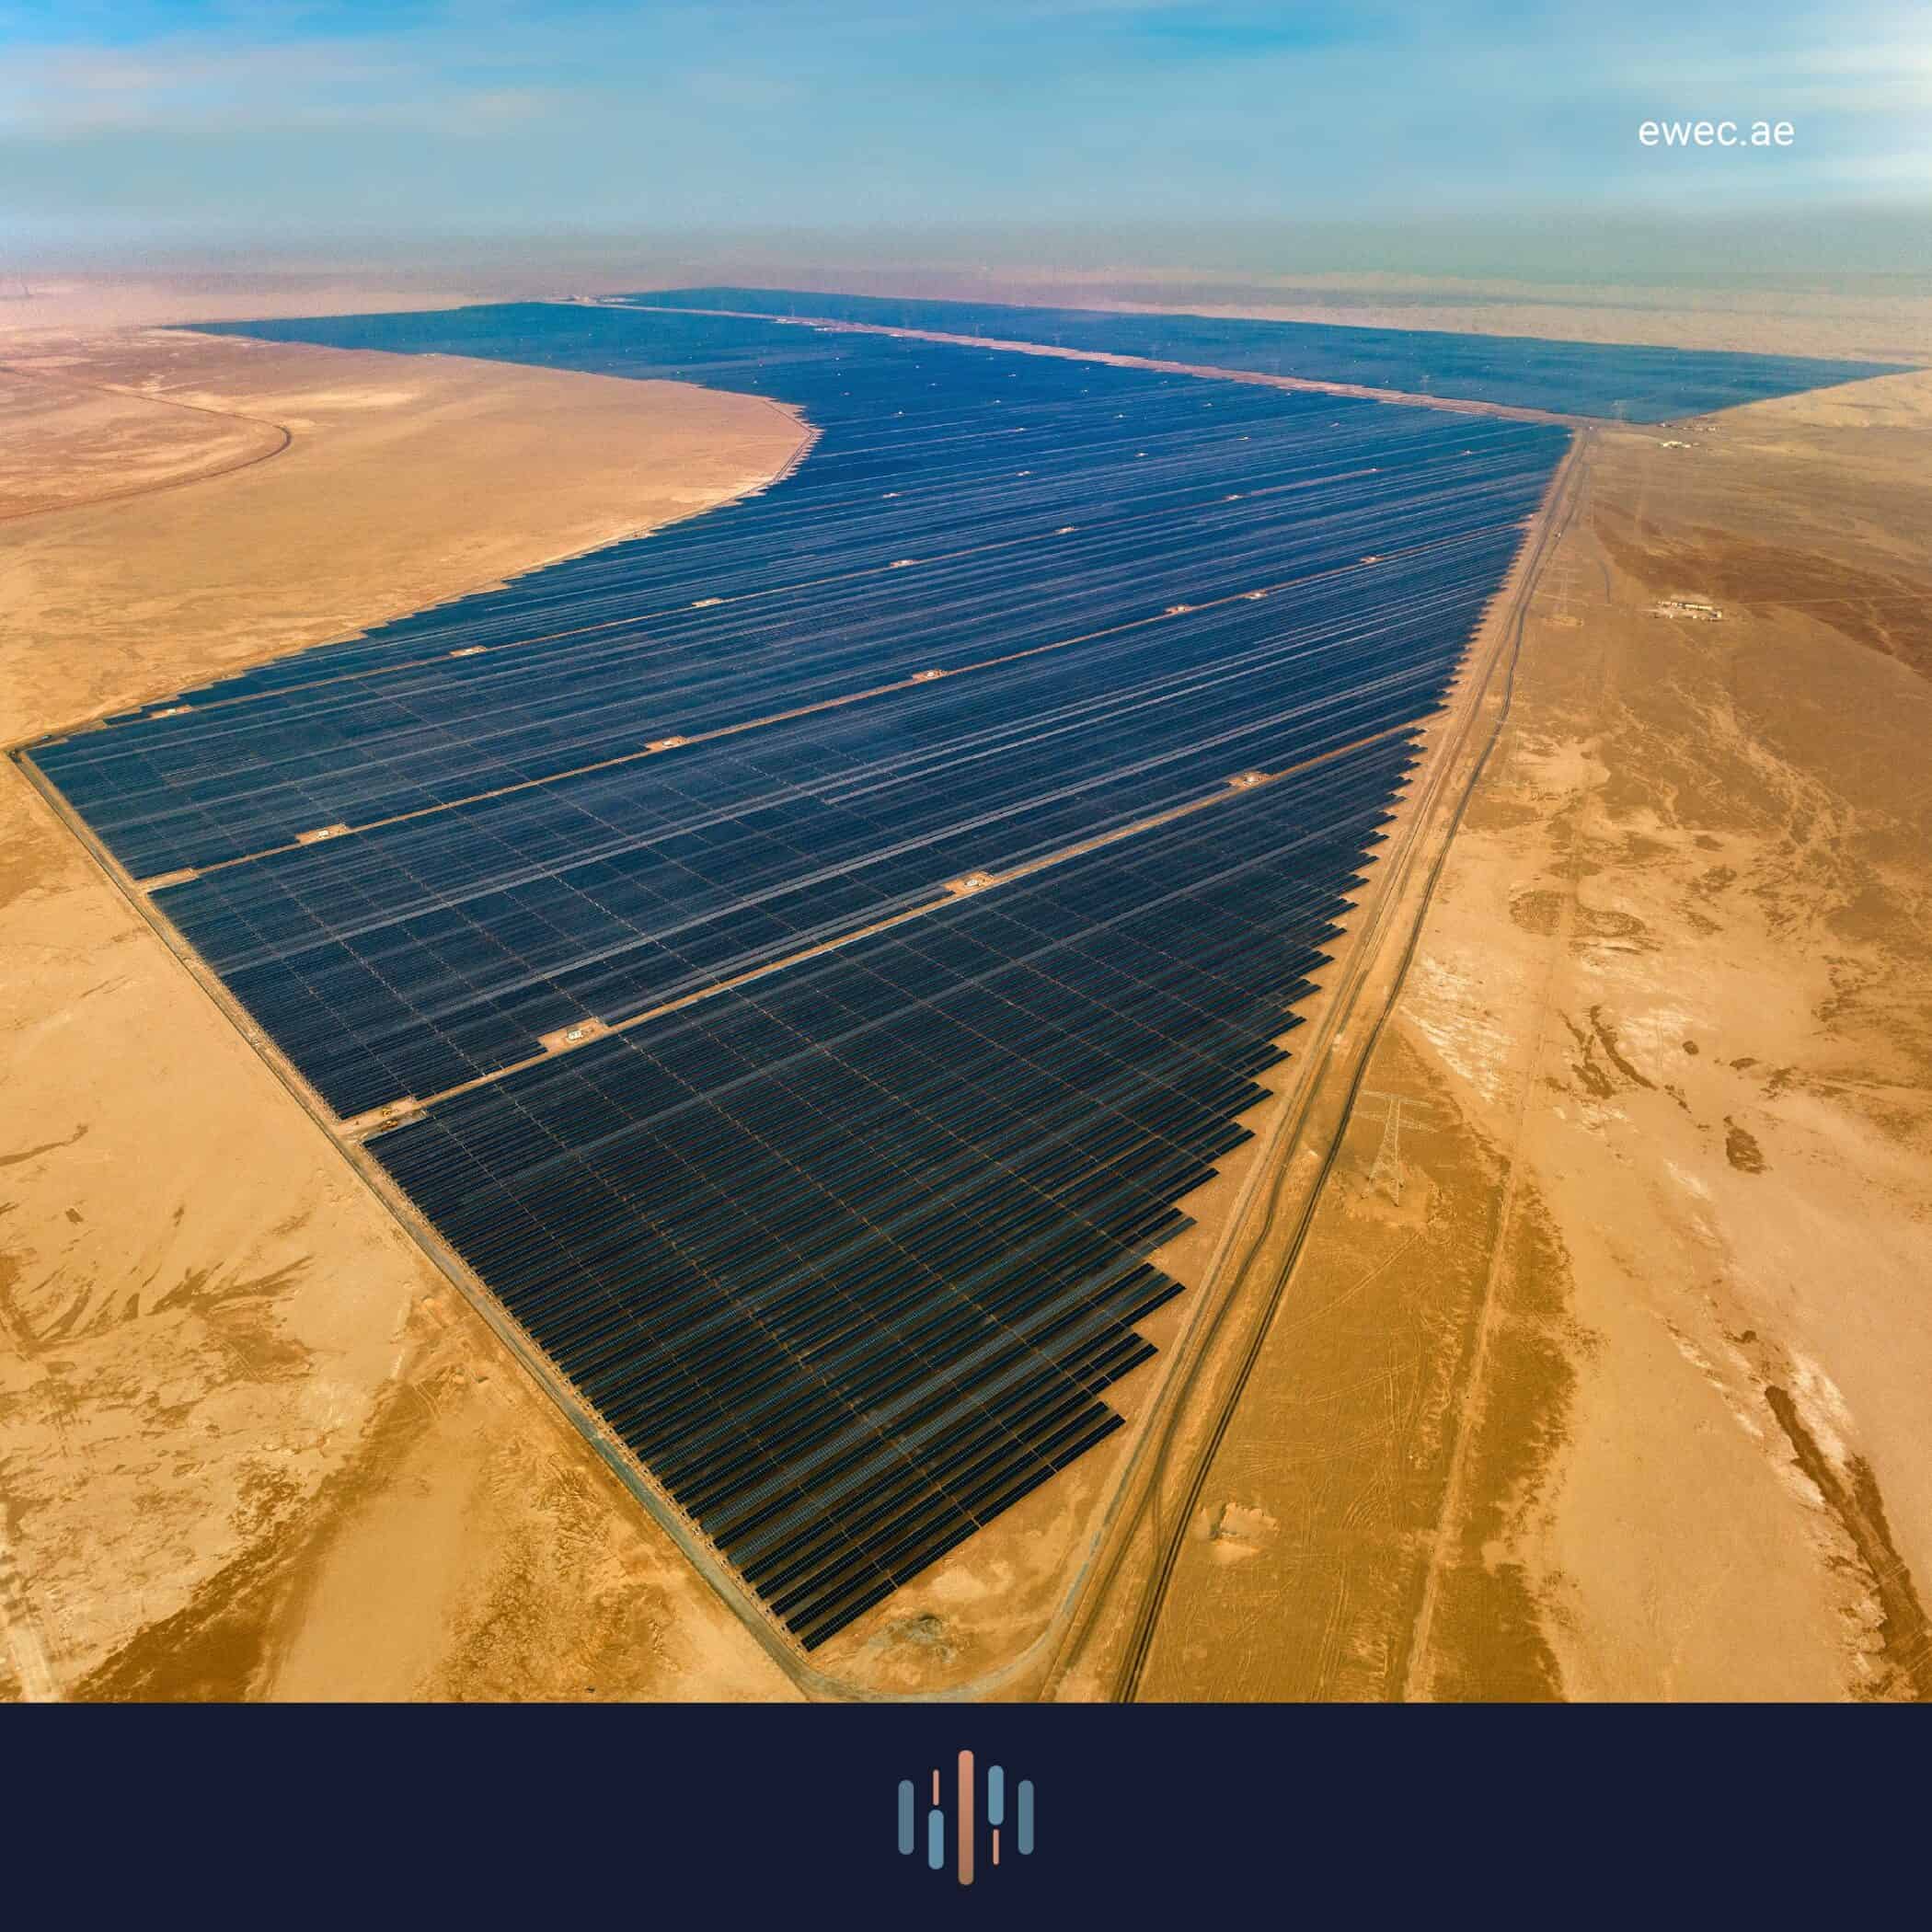 アラブ首長国連邦で世界最大の単一サイト太陽光発電所が稼働開始